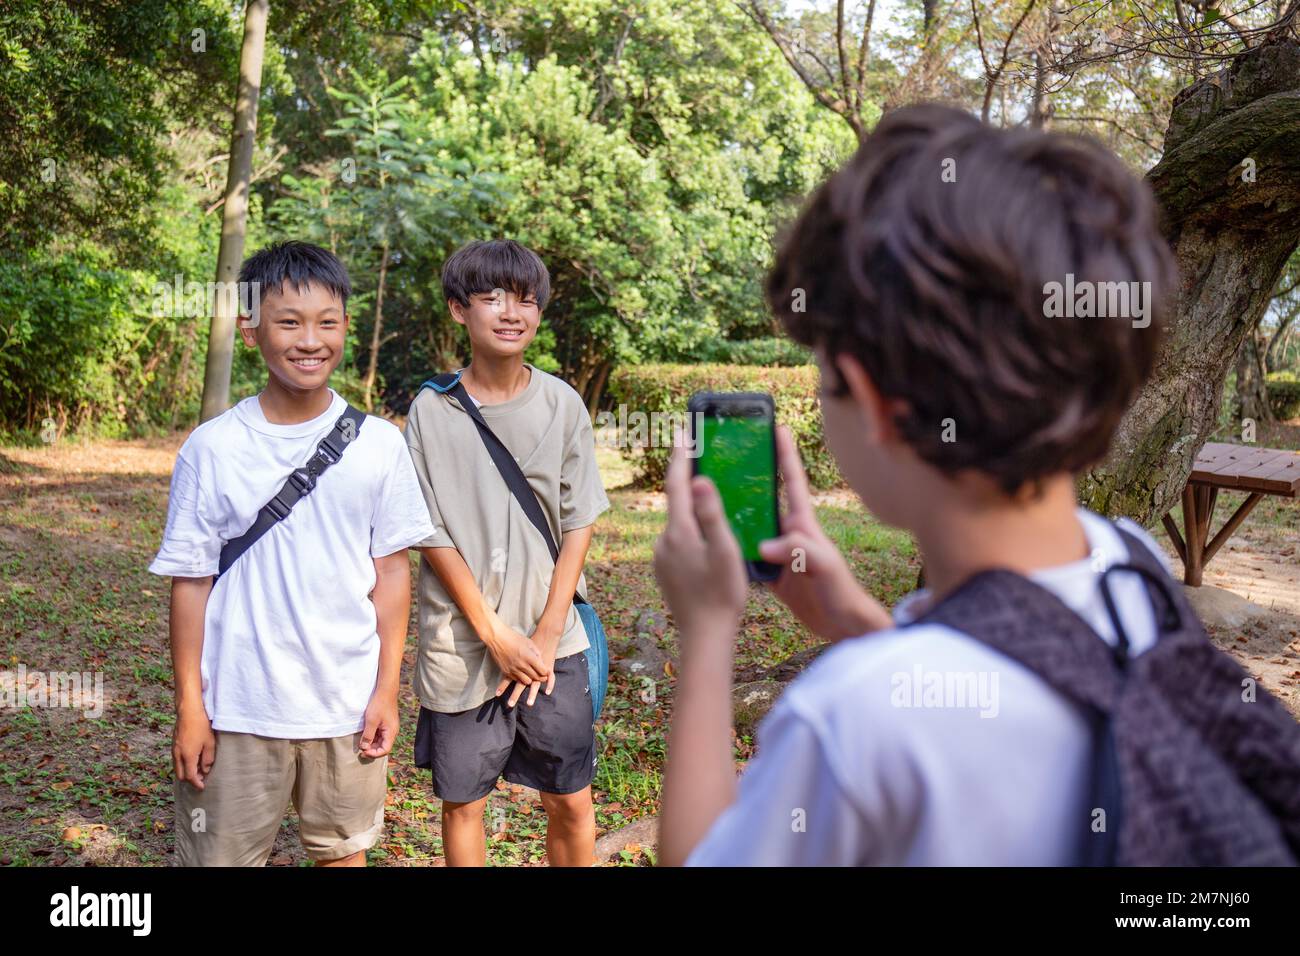 Un ragazzo con un telefono cellulare che fotografa due ragazzi di 13 anni fianco a fianco, all'aperto in un parco d'estate. Foto Stock